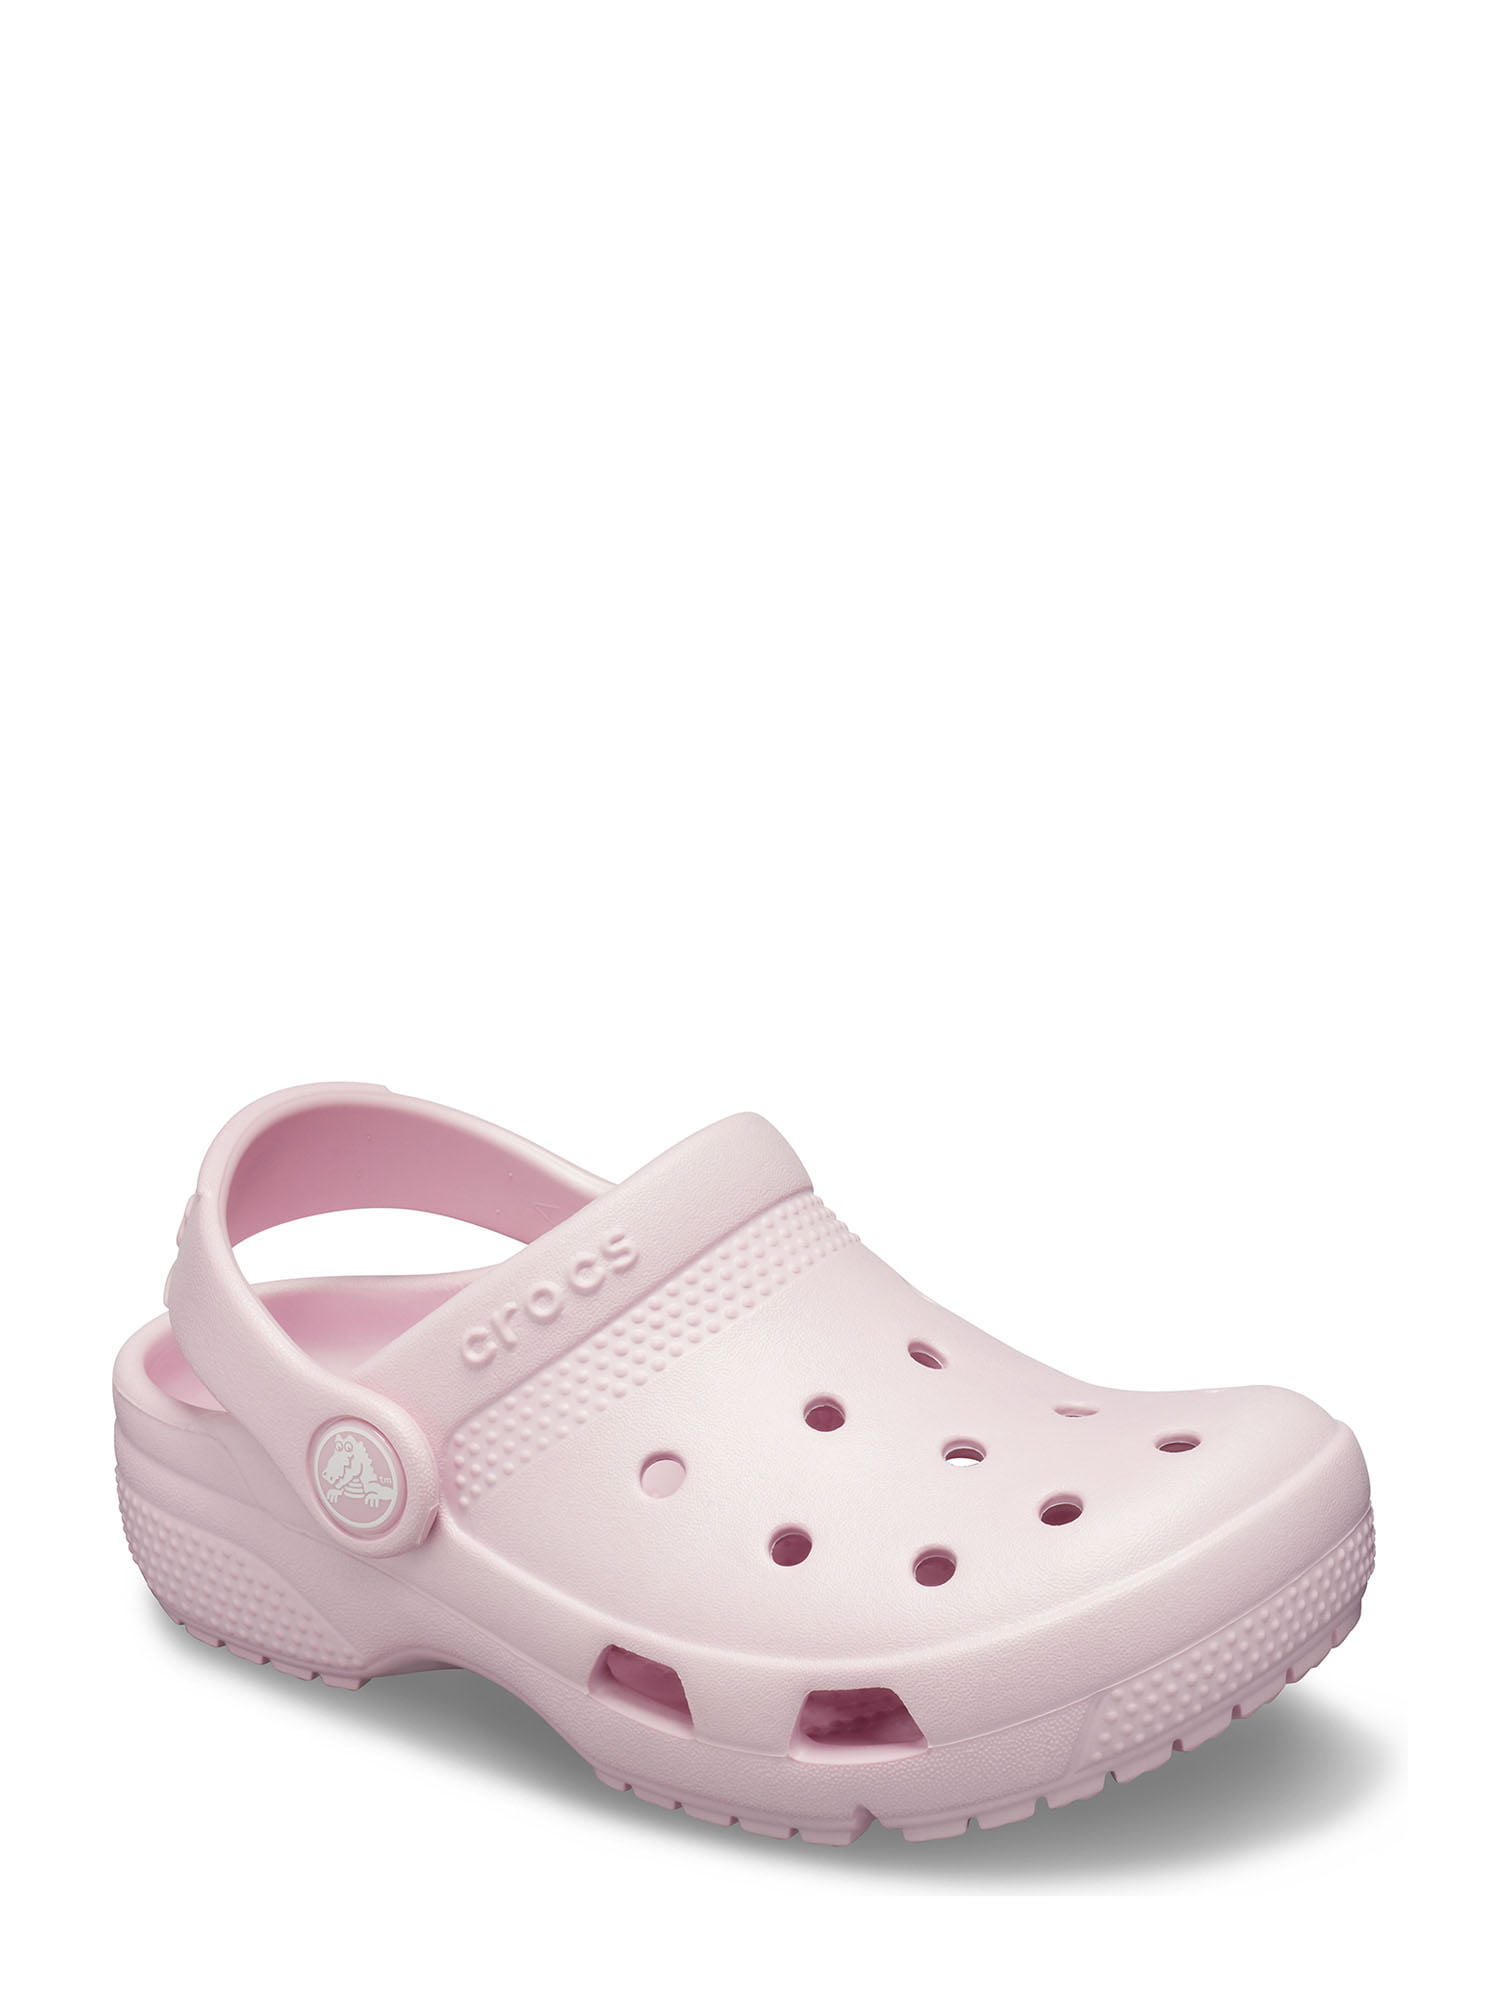 Pink Crocs Shoes : Apparel - Walmart 